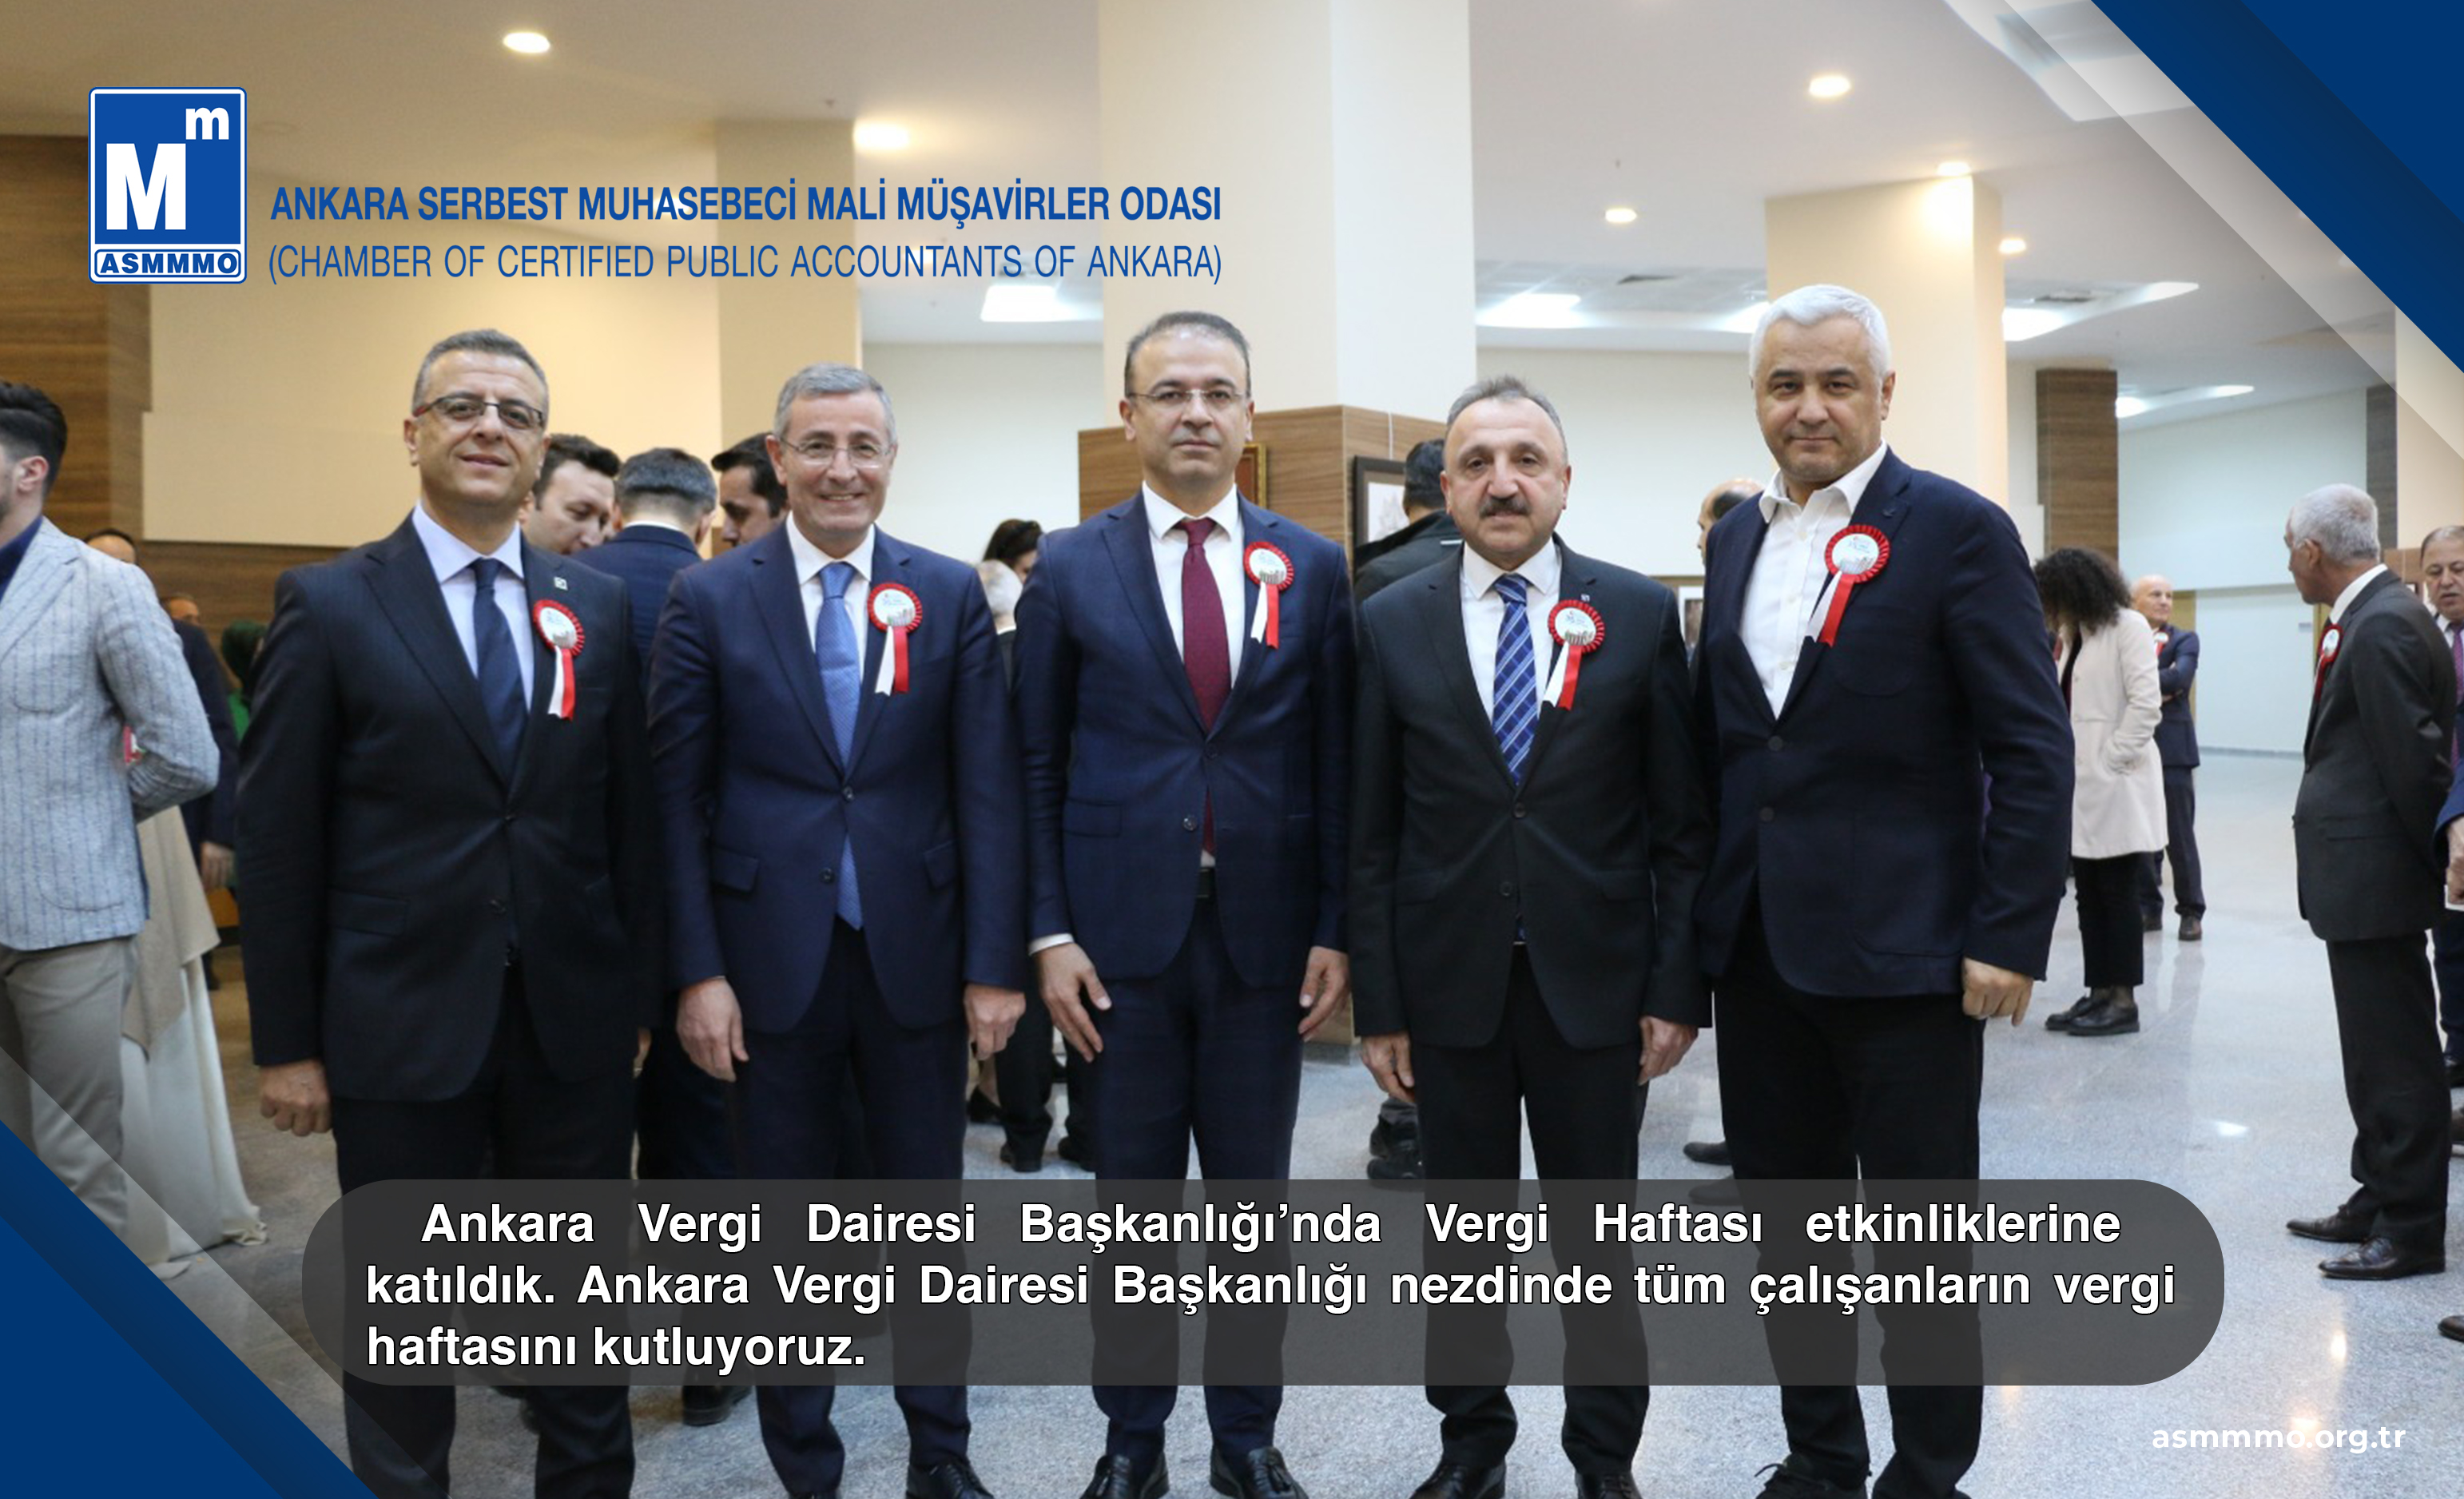 Ankara Vergi Dairesi Başkanlığı'nda Vergi Haftası Etkinliklerine Katıldık